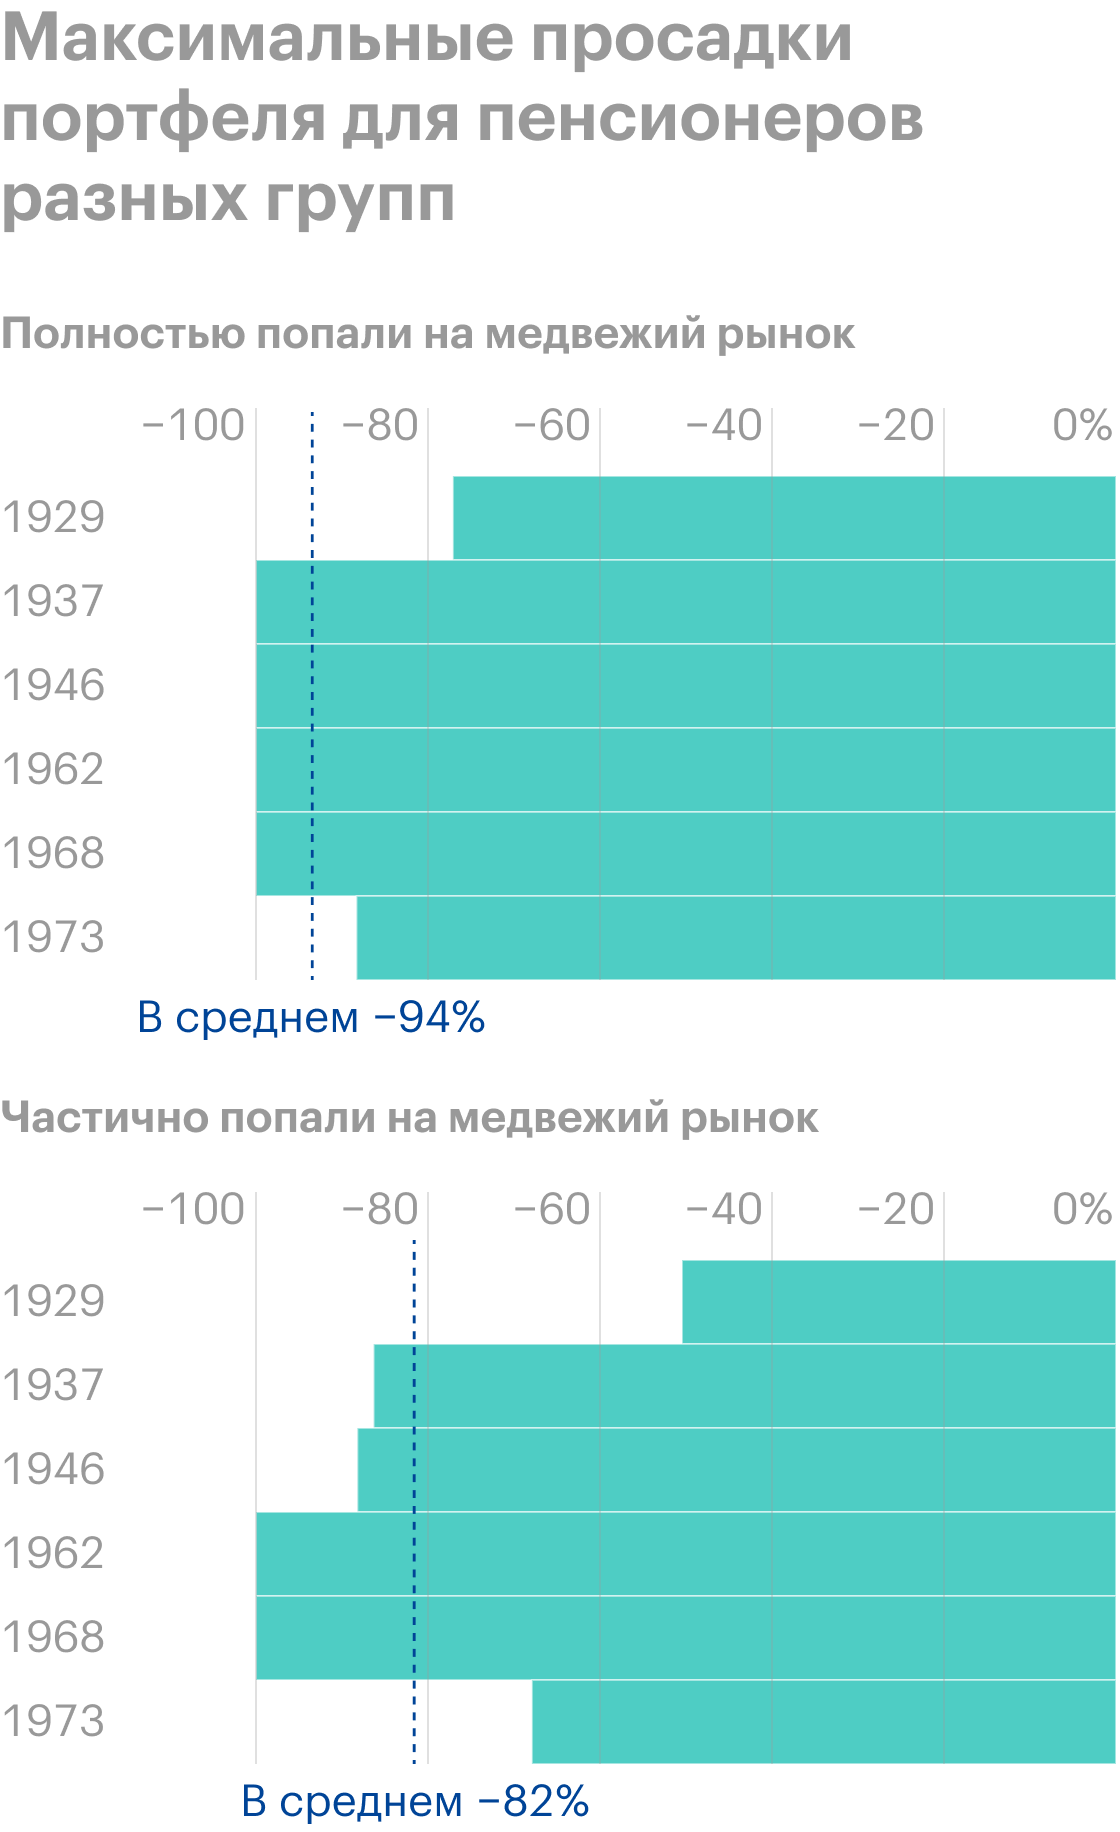 Максимальная просадка в стоимости пенсионного портфеля для пенсионеров, попавших на медвежий рынок полностью или частично, — в среднем −94 и −82% соответственно. Источник: Vanguard